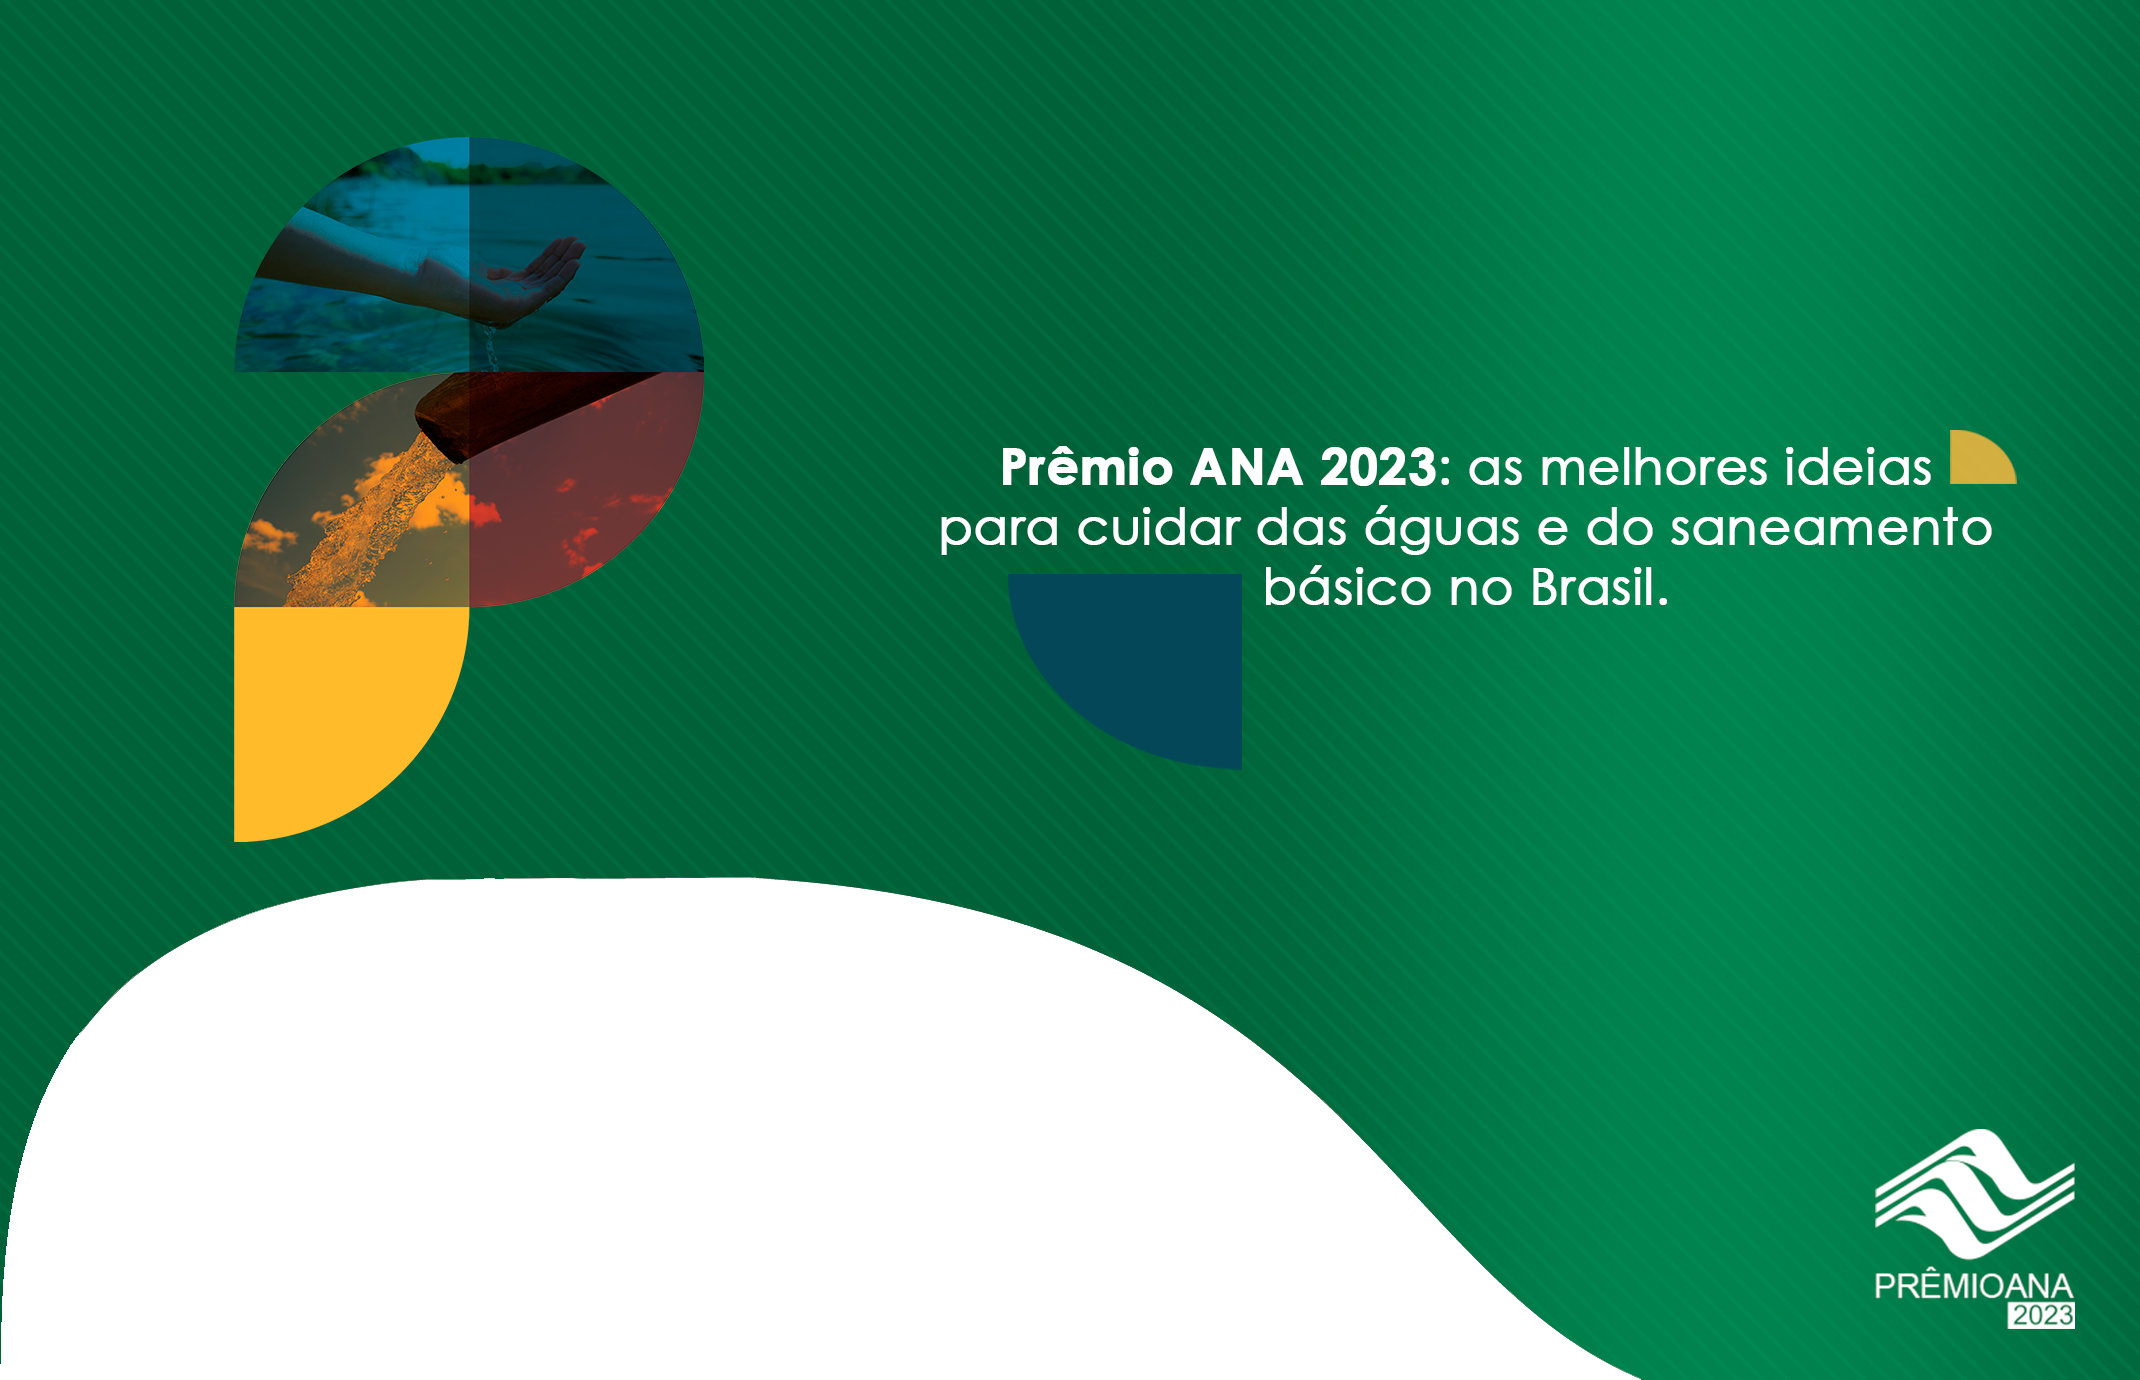 Faltam 2 semanas para o fim das inscrições para o Prêmio ANA 2023